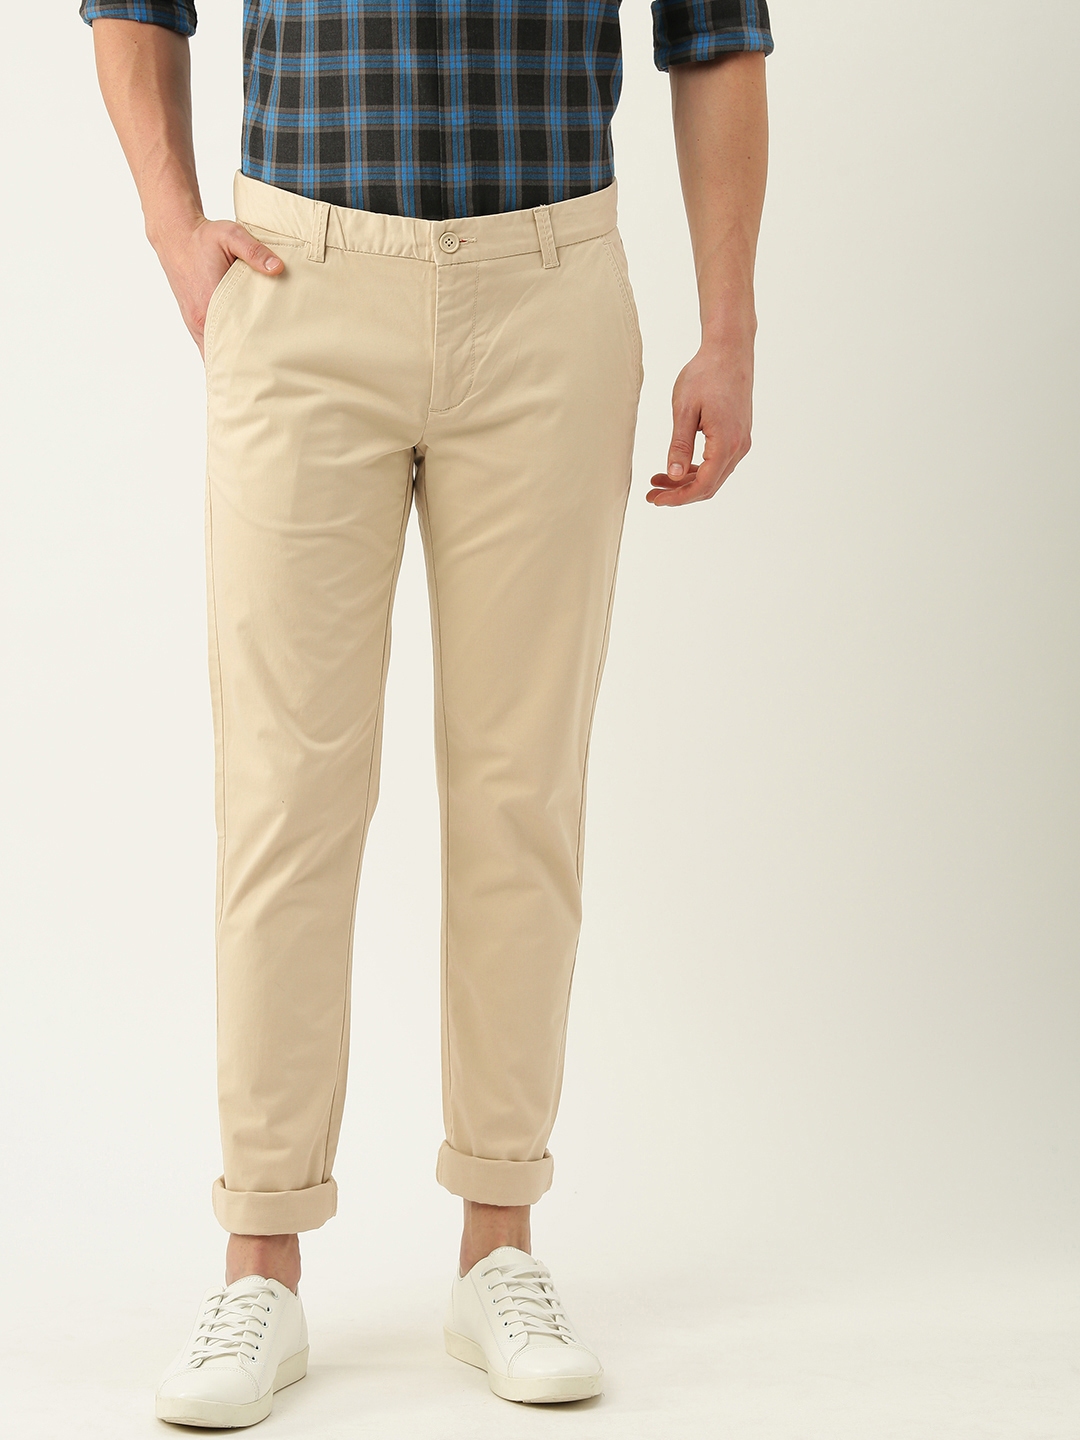 INVICTUS Slim Fit Men Beige Trousers  Buy INVICTUS Slim Fit Men Beige  Trousers Online at Best Prices in India  Flipkartcom